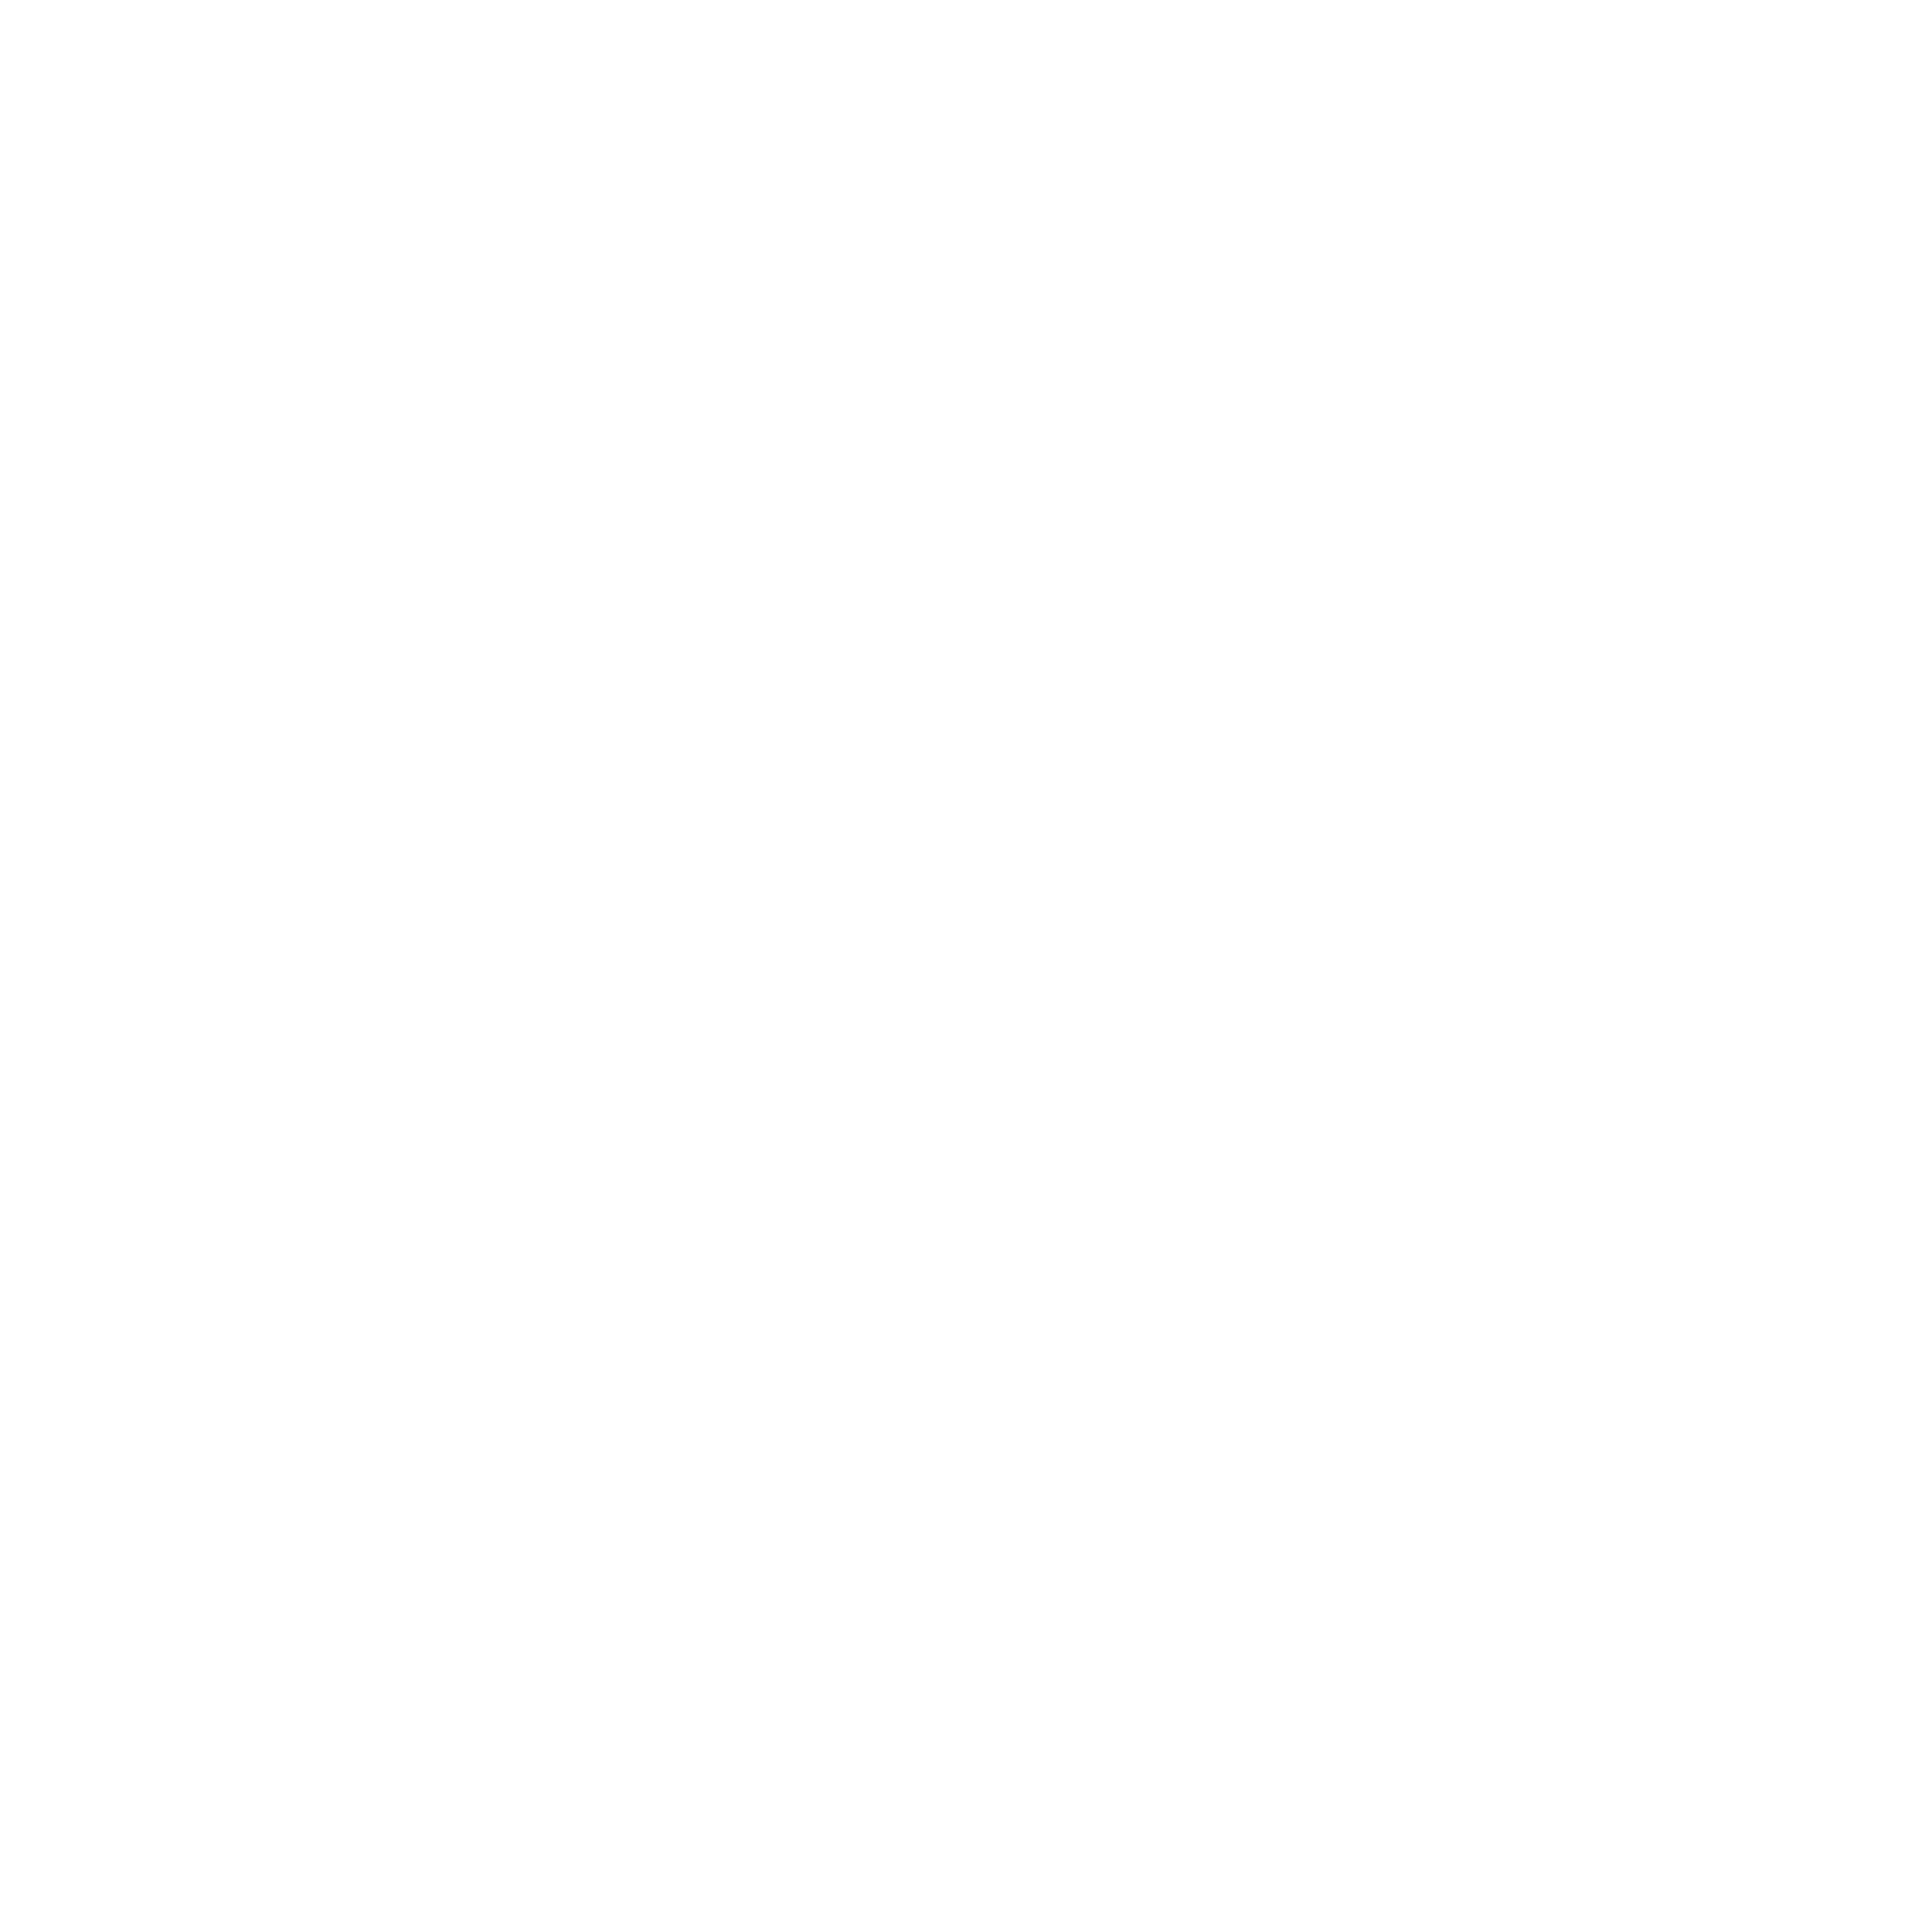 Ute Scoot